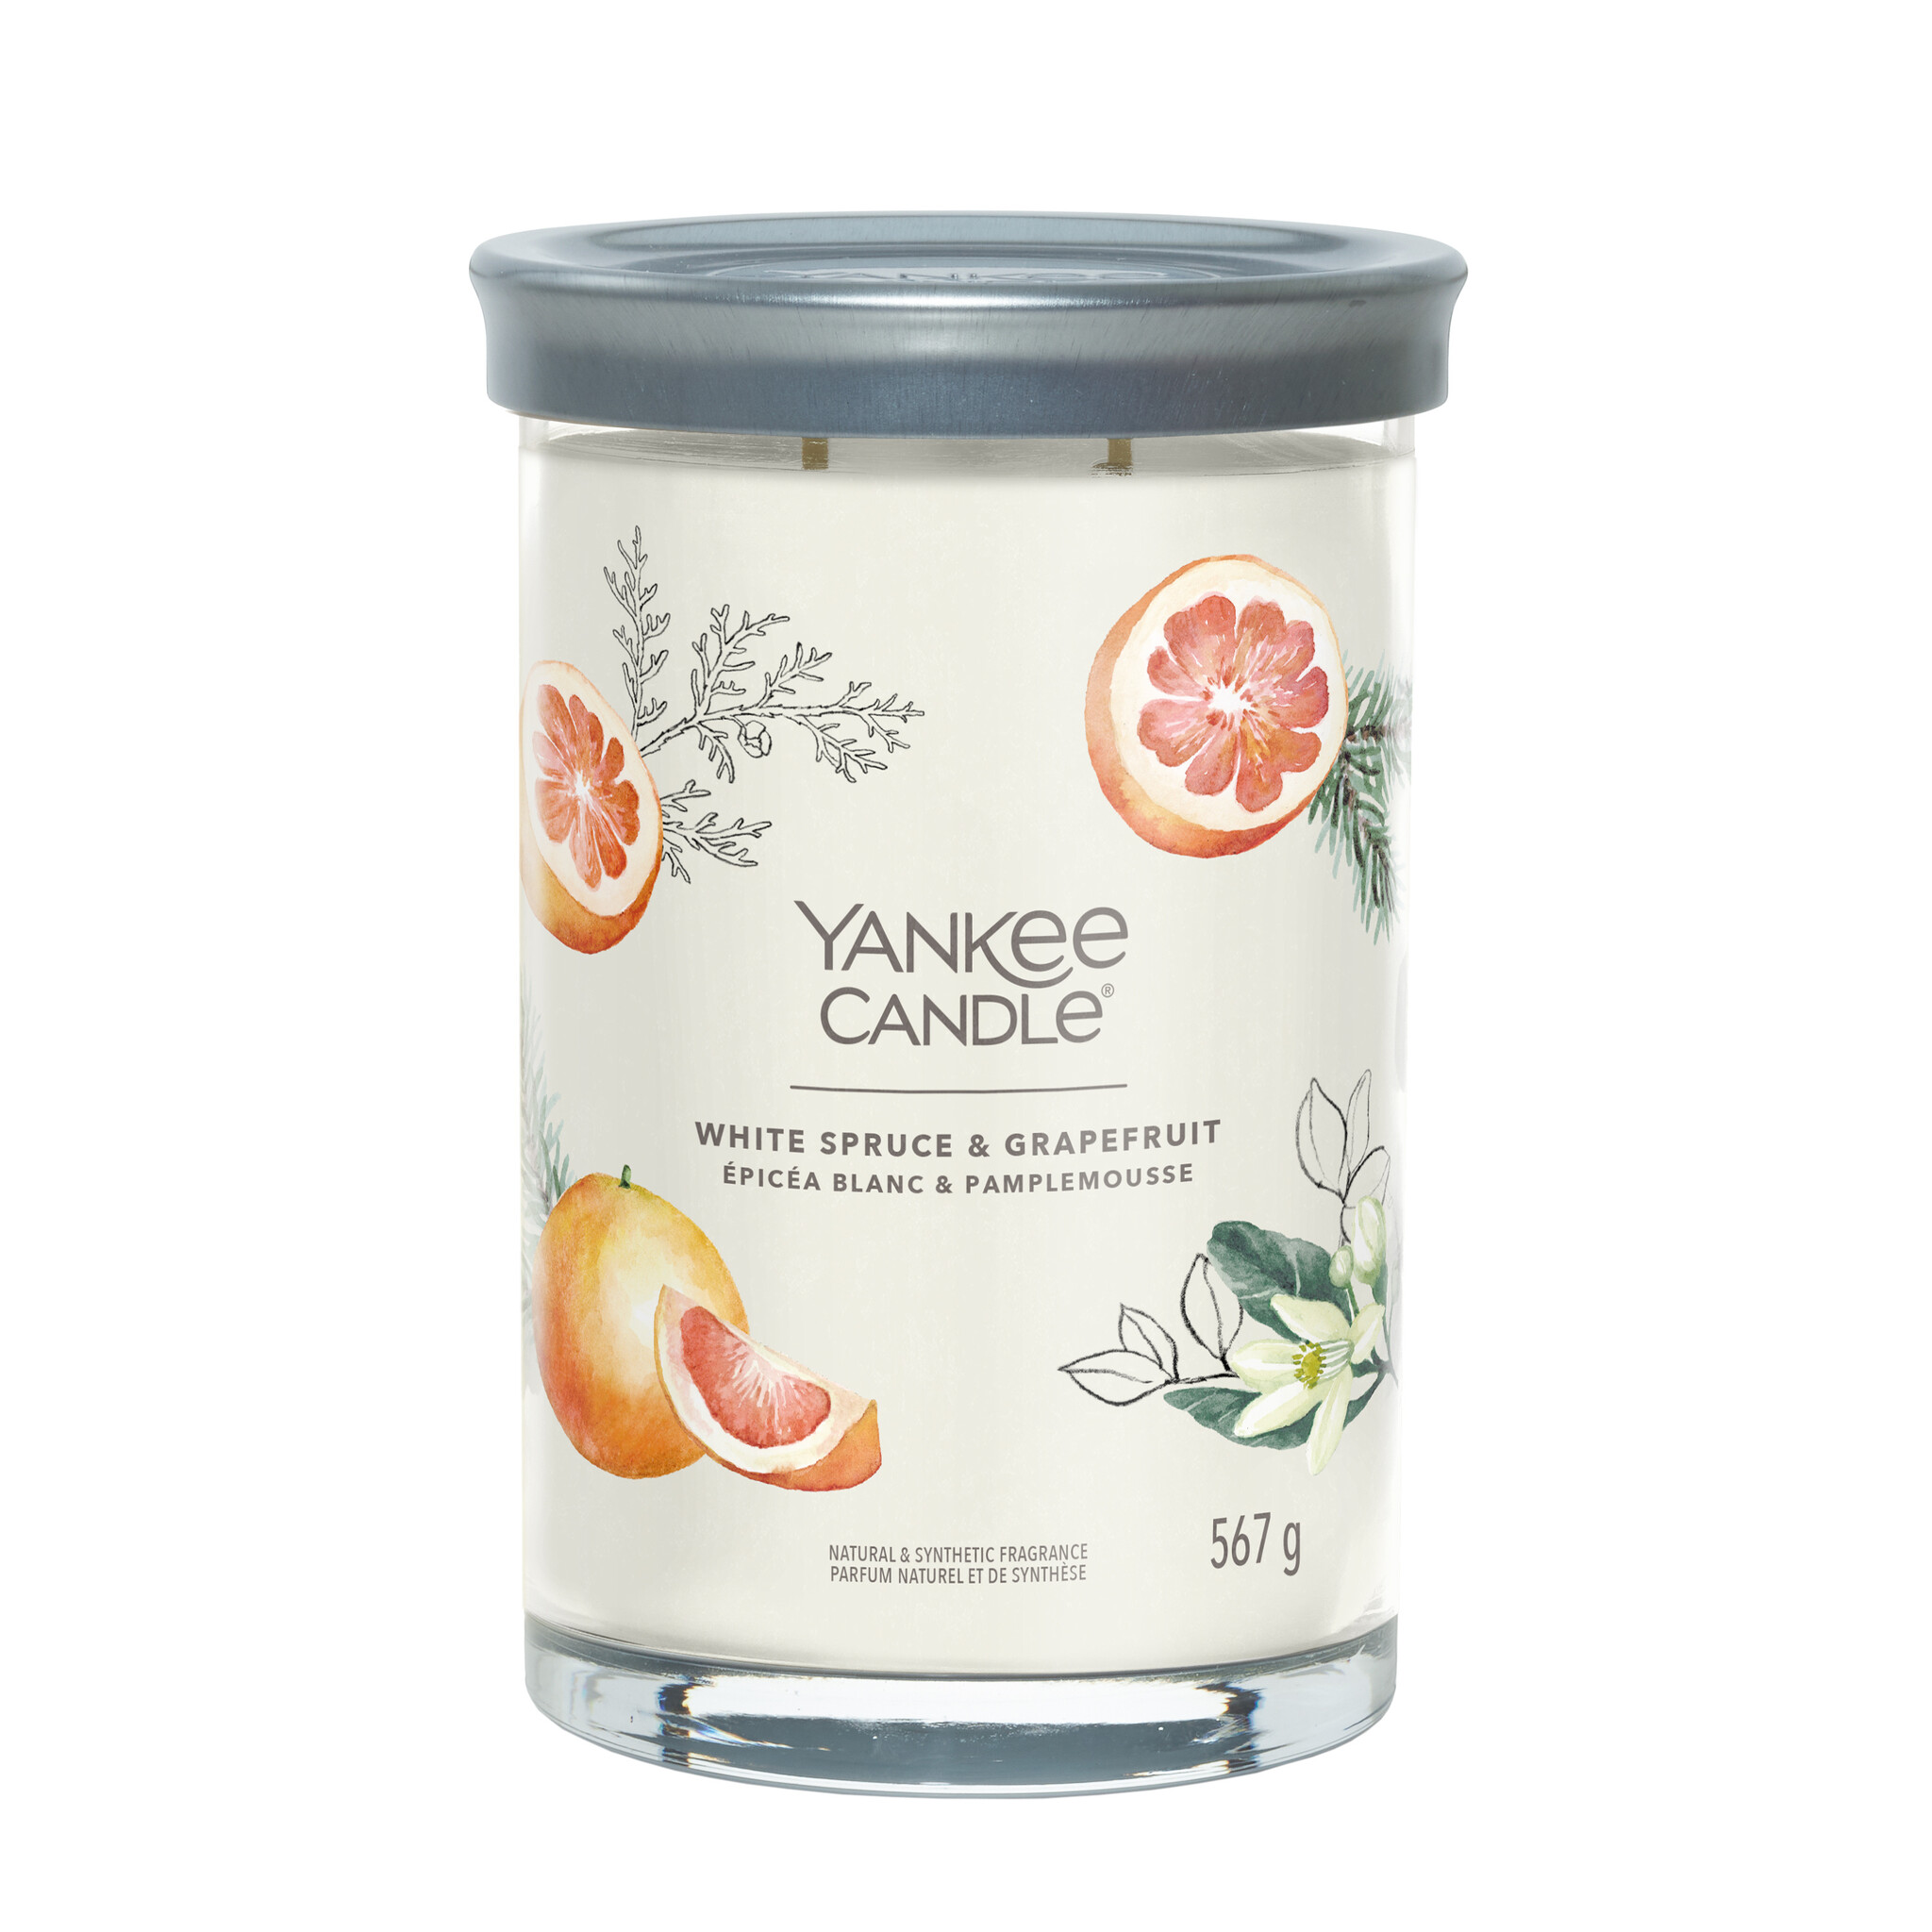 Yankee Candle - White Spruce & Grapefruit Large Tumbler